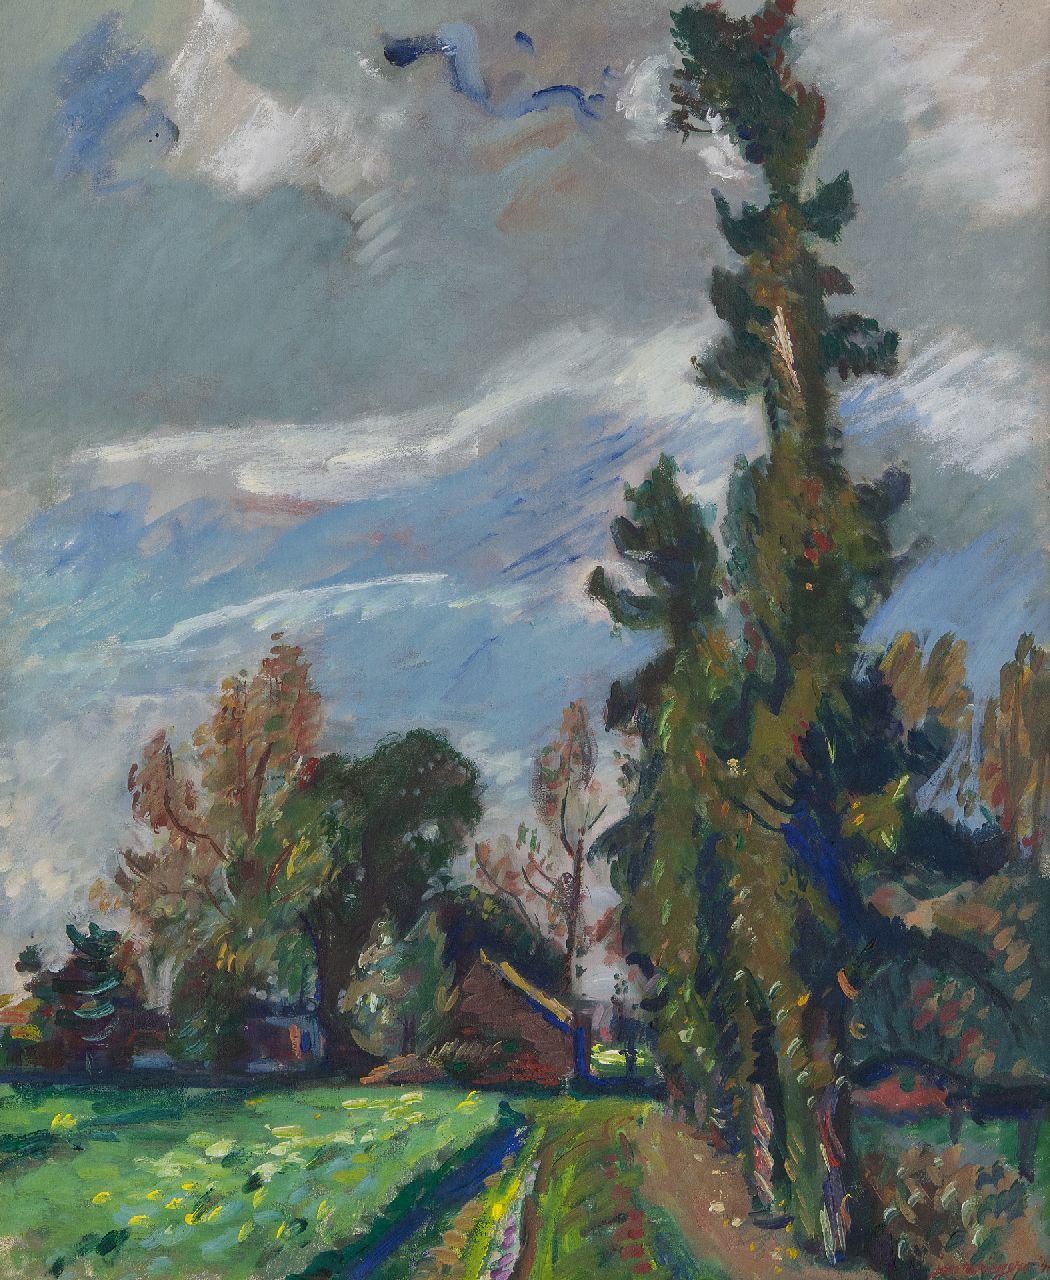 Wiegers J.  | Jan Wiegers | Schilderijen te koop aangeboden | Landschap Veluwe, olieverf op doek 61,4 x 50,5 cm, gesigneerd rechtsonder en gedateerd '41